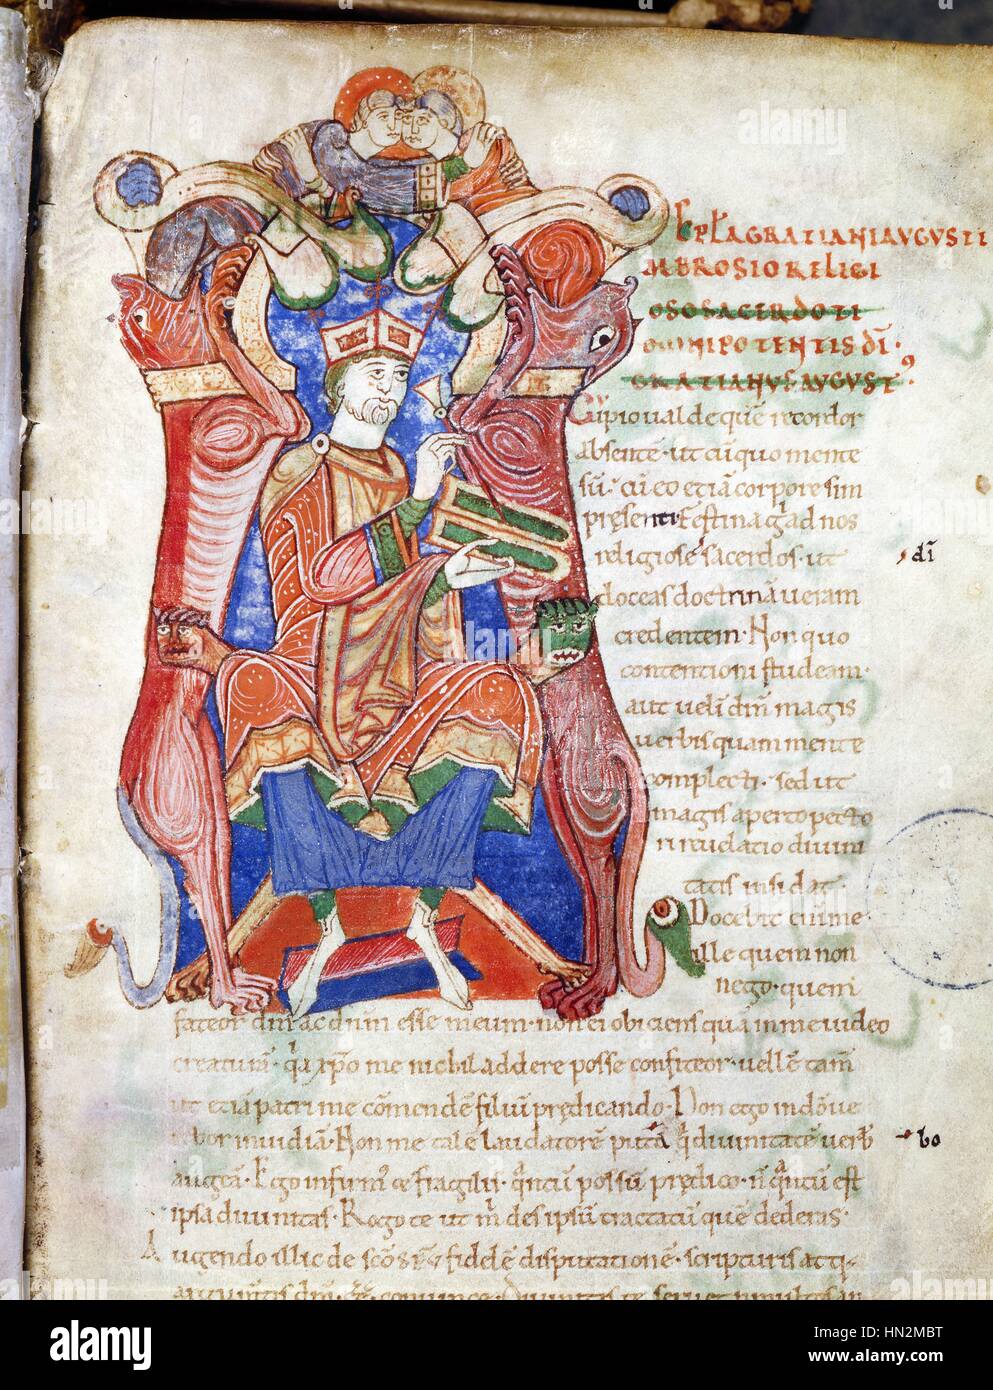 Manuskript von St. Ambroise, aus der Abtei von Saint-Euroul. Gratien schreiben mit einem Stilett auf Wachs Tabletten Frankreich frühen 12. Jahrhundert Bibliotheque d'Alencon Stockfoto